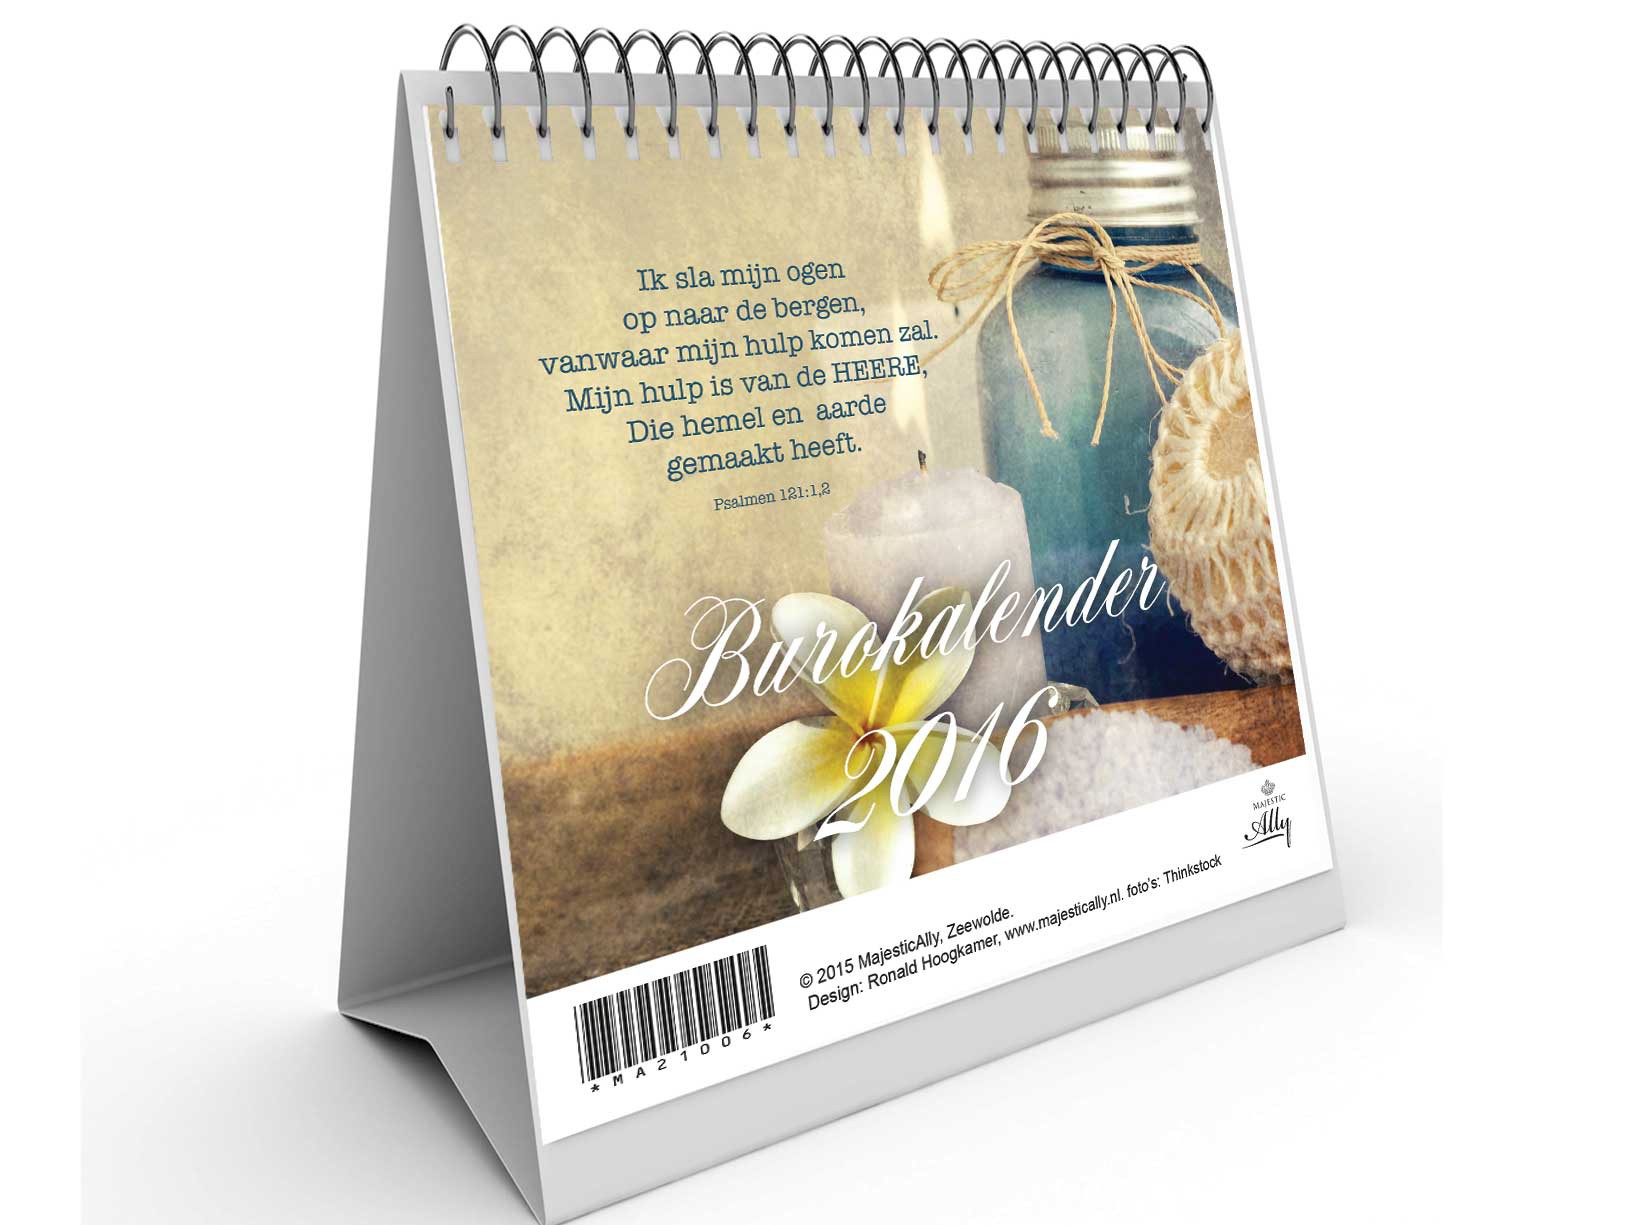 Burokalender 2016 brocante met bijbeltek - MA21006 -  Kalenders/agenda's 2016 bij MajesticAlly